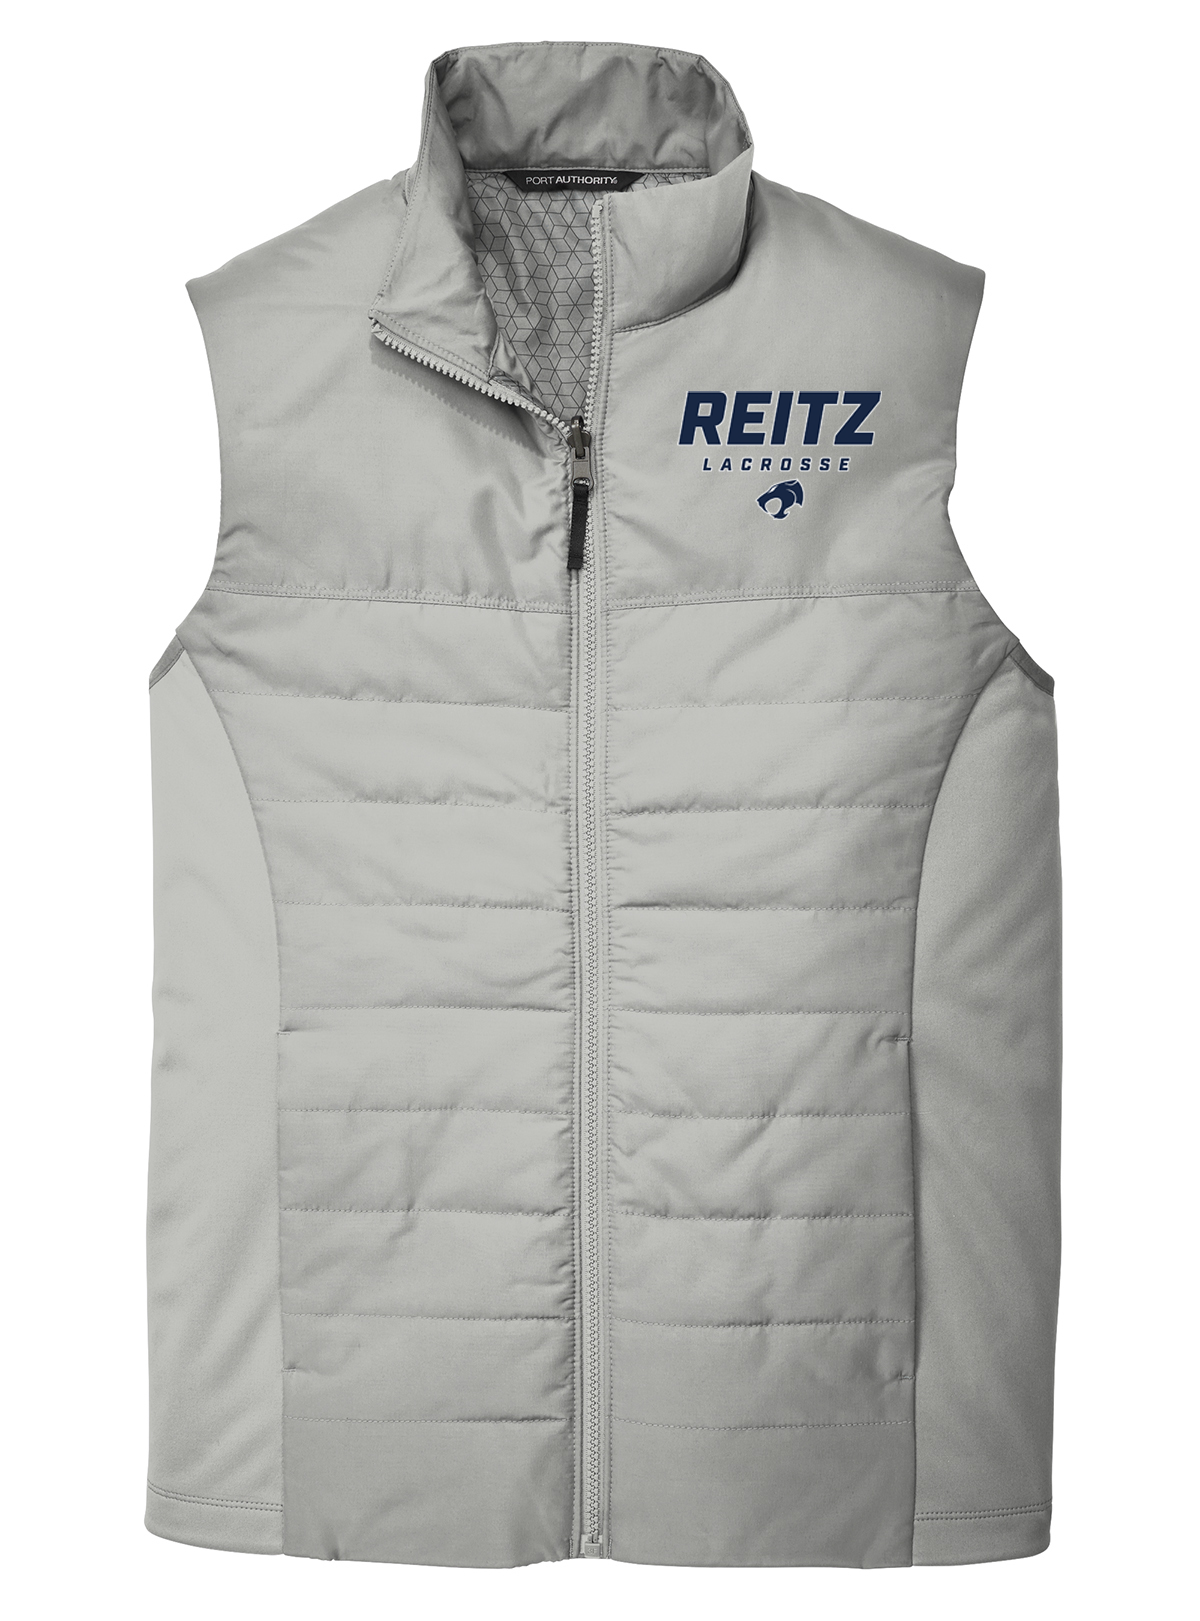 Reitz Lacrosse Grey Vest